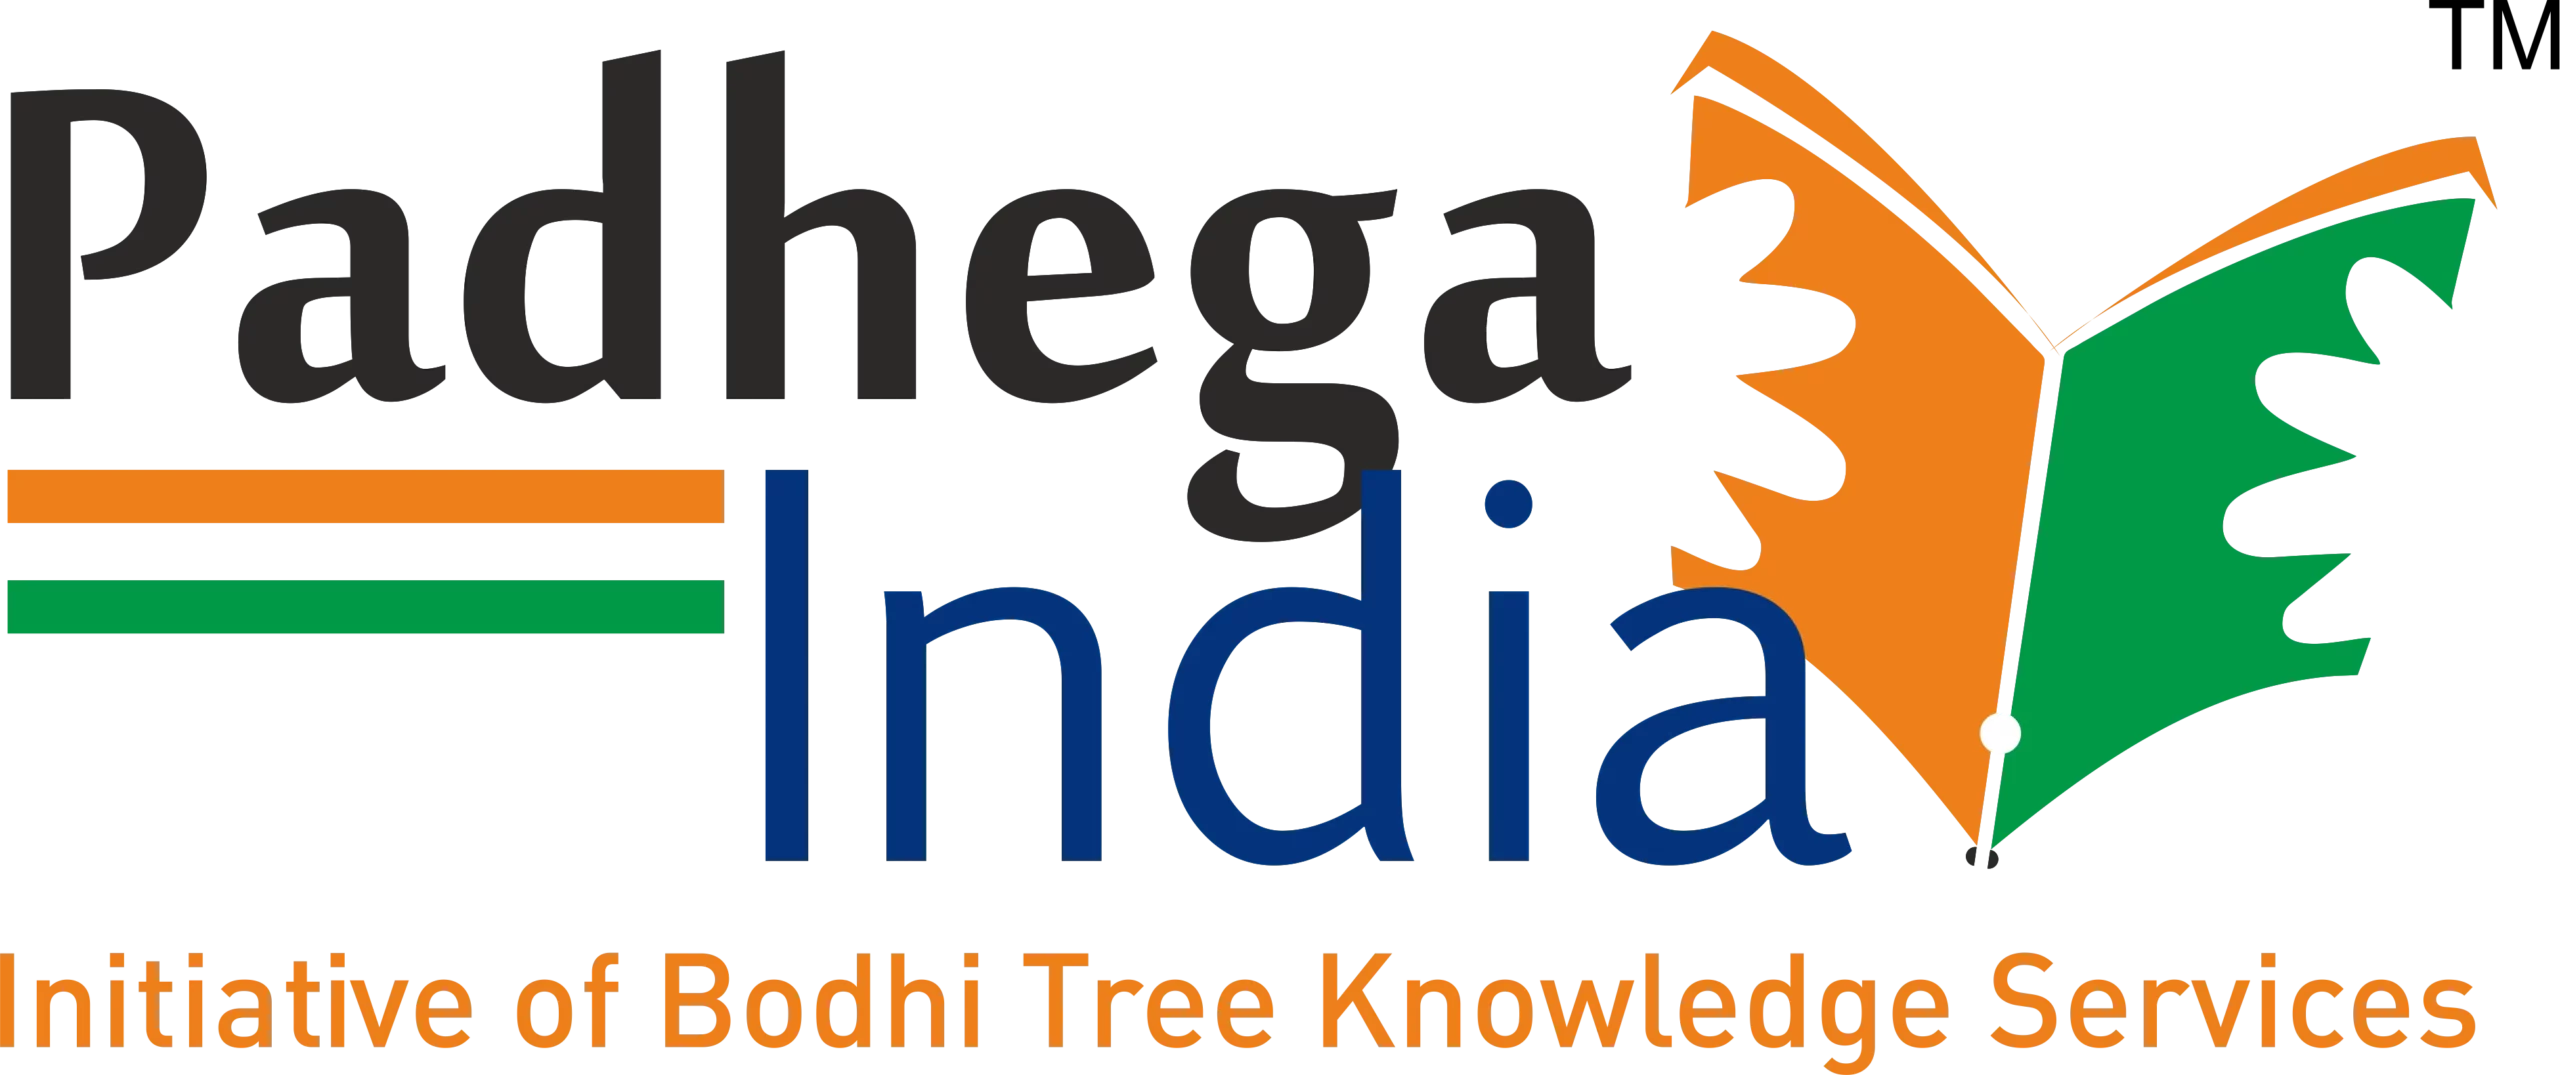 padhega india toh badhega india essay in hindi